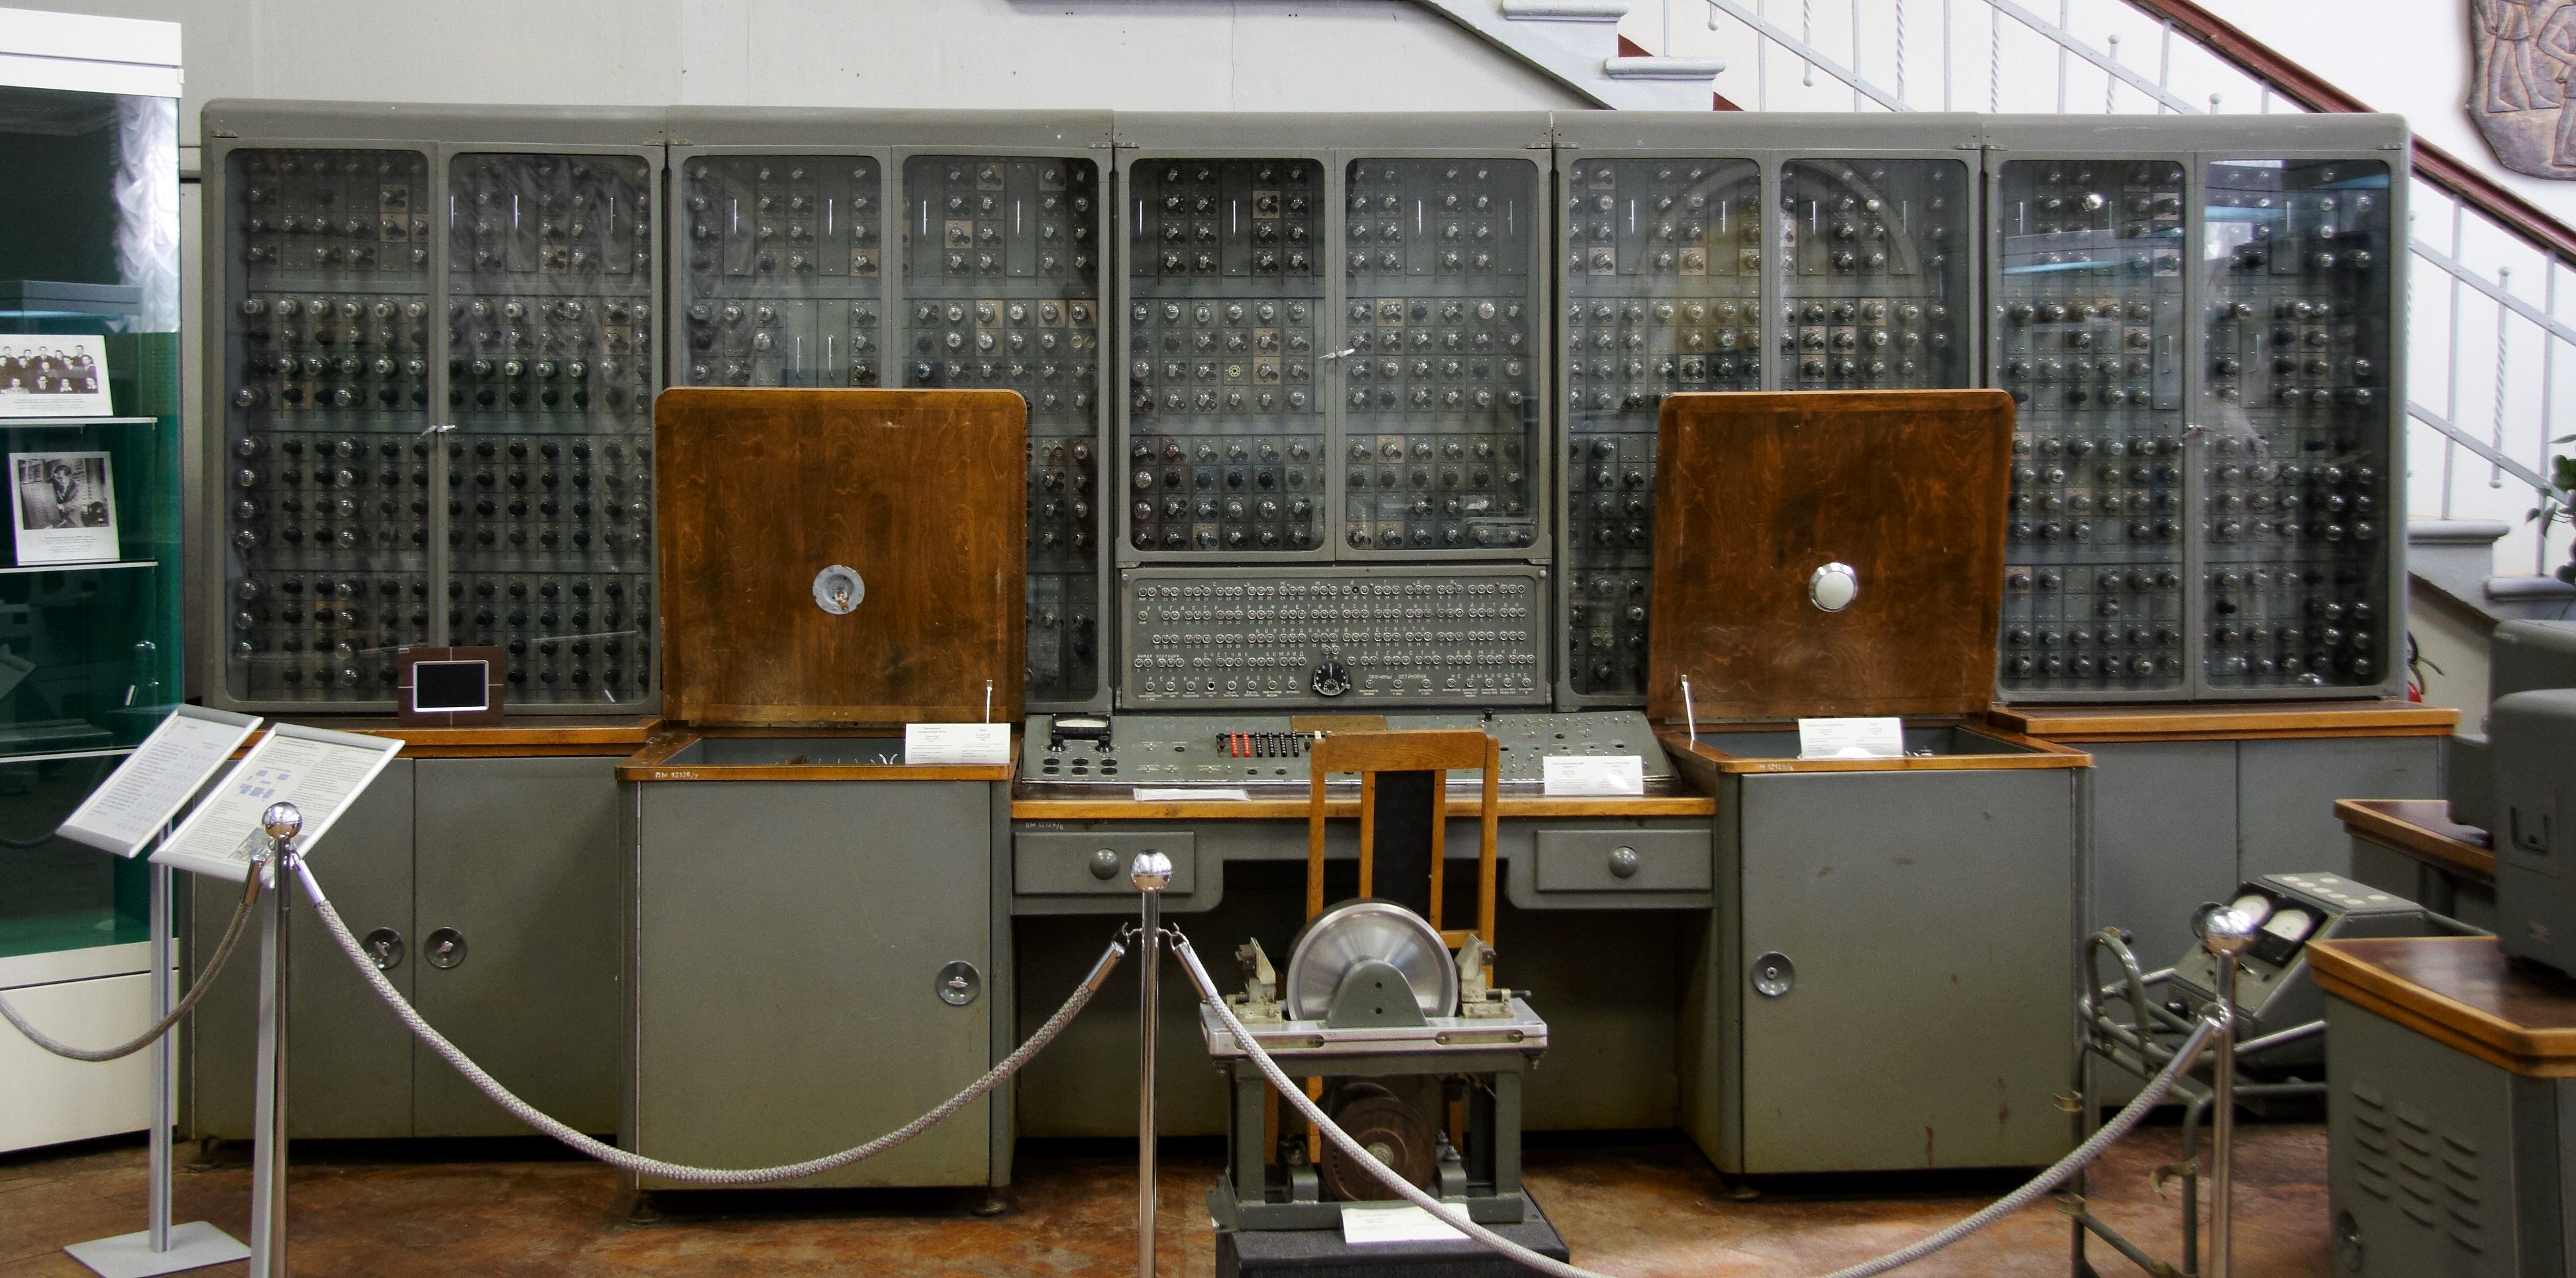 Первая электронно вычислительная машина была создана. ЭВМ стрела Урал-1. ЭВМ первого поколения «Урал-2». Урал 16 ЭВМ. ЭВМ “Урал-1” Рамеев.